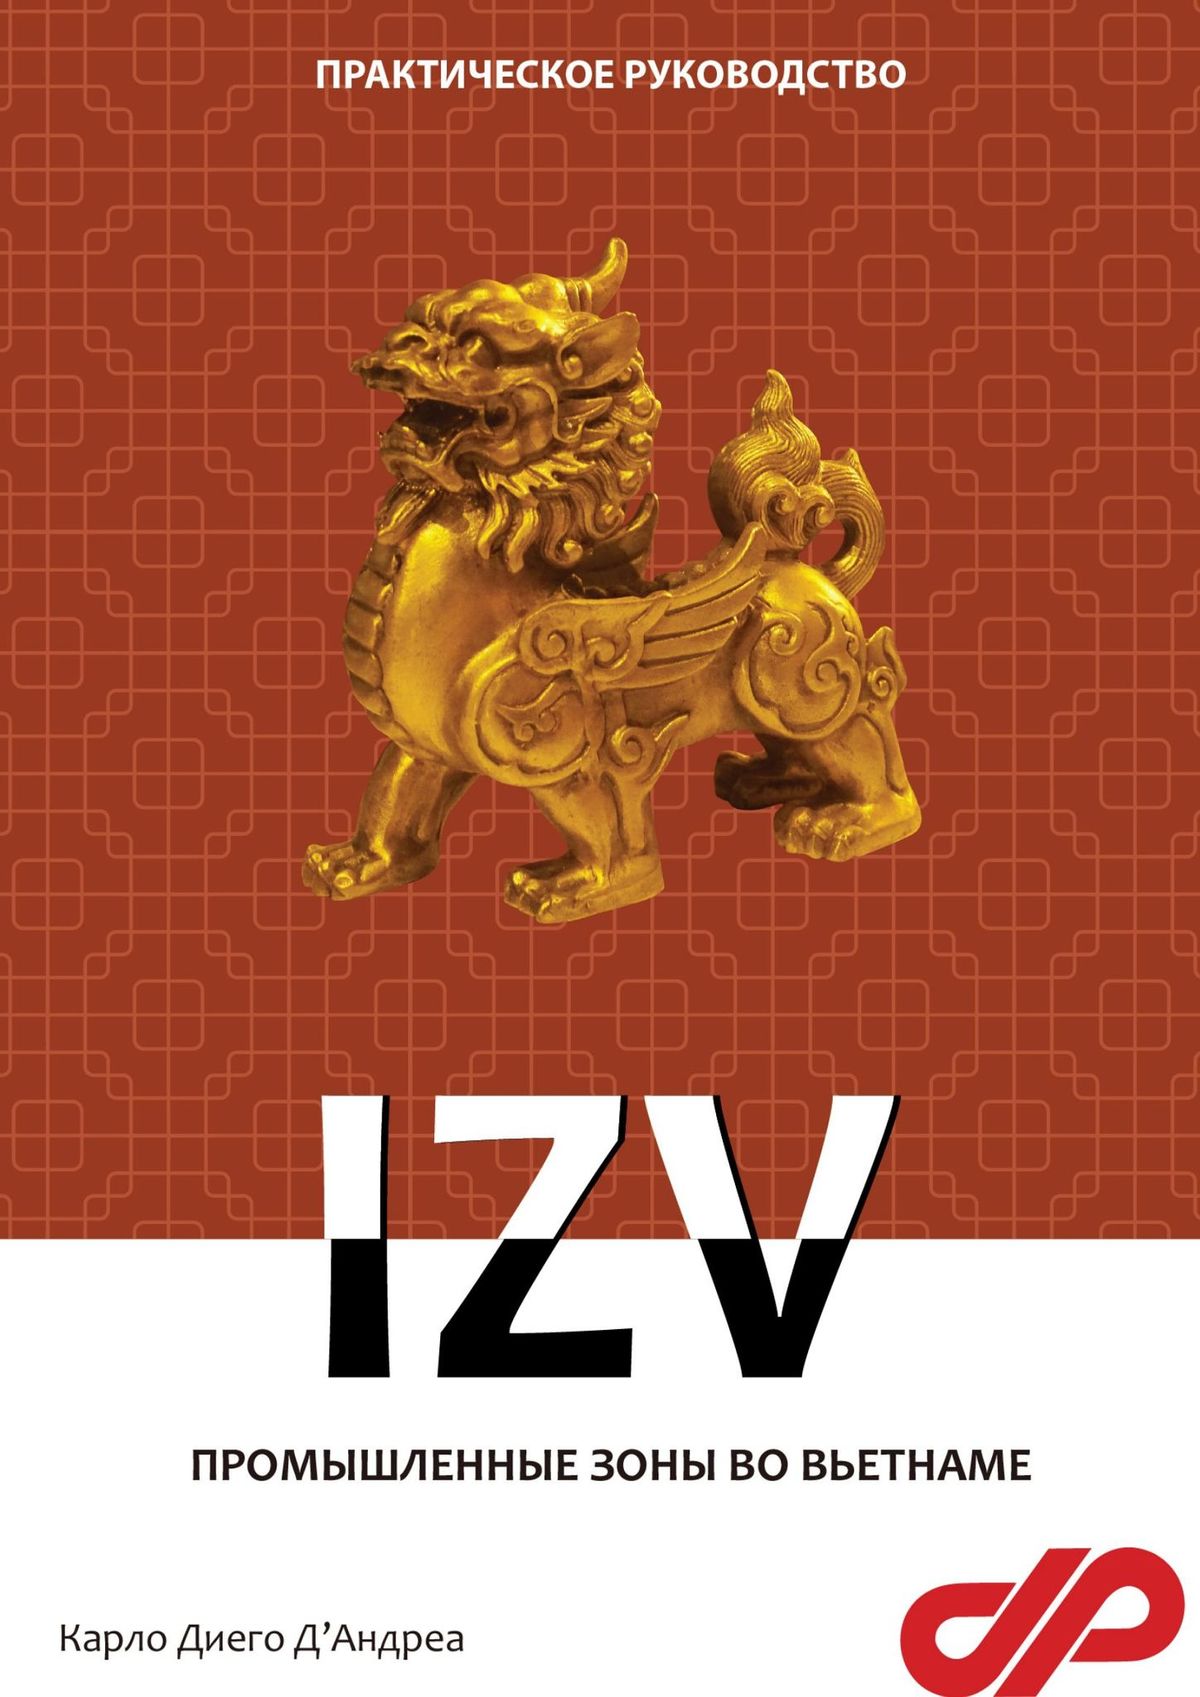 Книга  Промышленные зоны во Вьетнаме. IZV созданная Карло Диего Д'Андреа может относится к жанру политология, просто о бизнесе, руководства, юриспруденция. Стоимость электронной книги Промышленные зоны во Вьетнаме. IZV с идентификатором 65705237 составляет 100.00 руб.